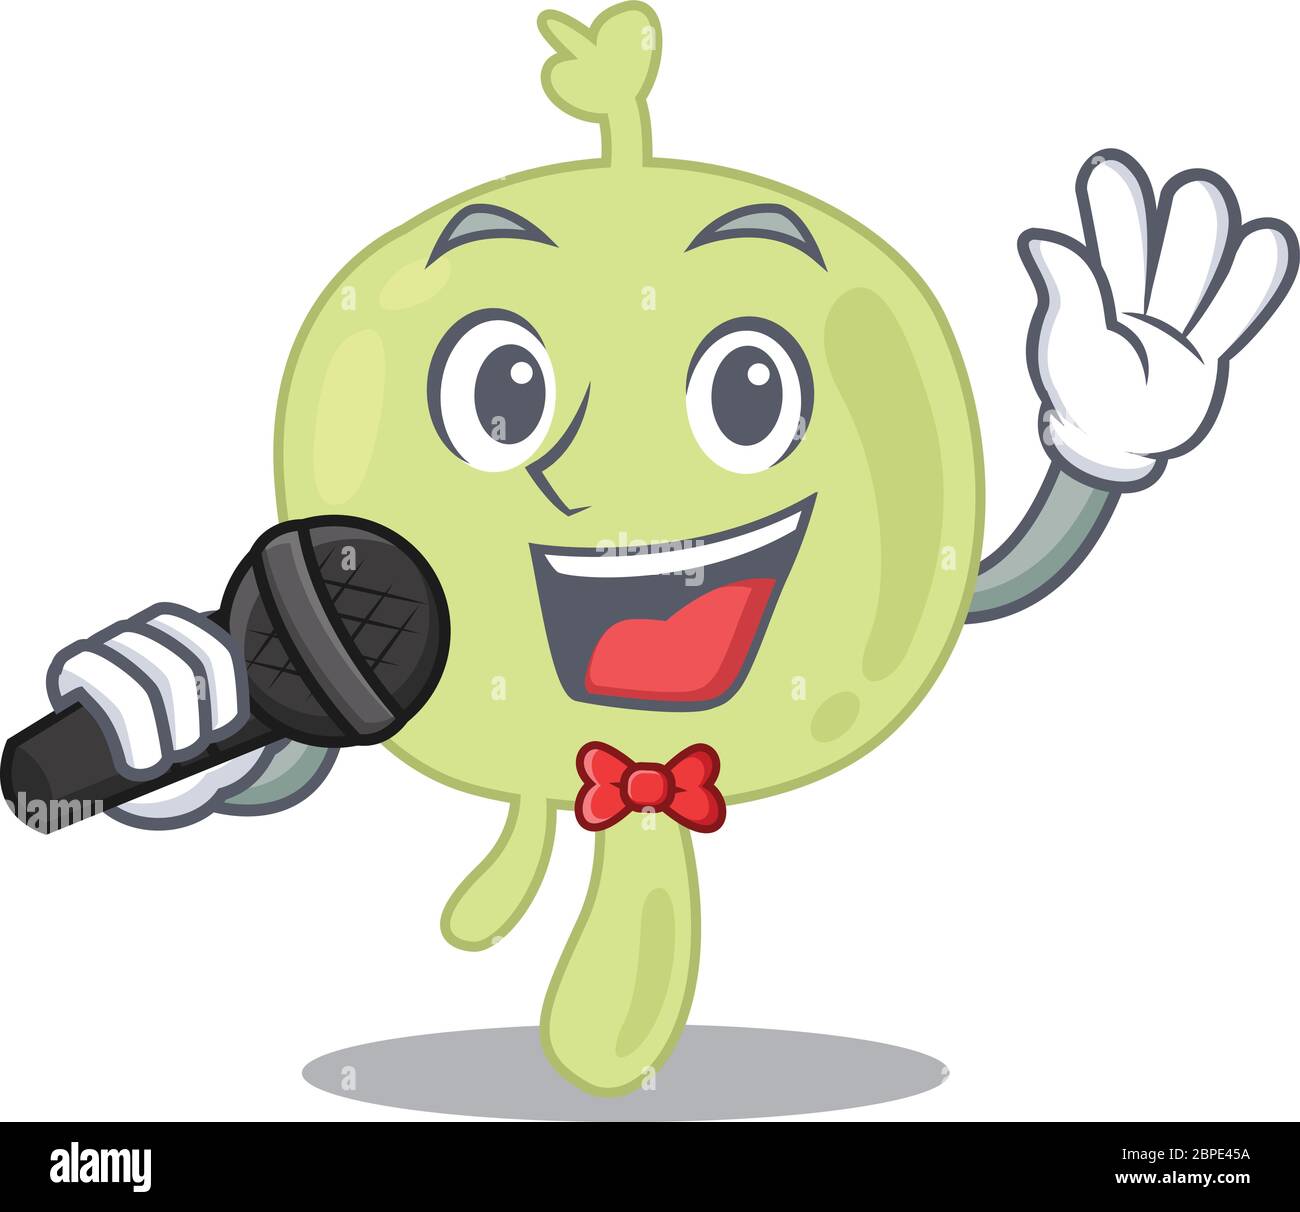 personaje de dibujos animados de un ganglio linfático cantar una canción con un micrófono Ilustración del Vector